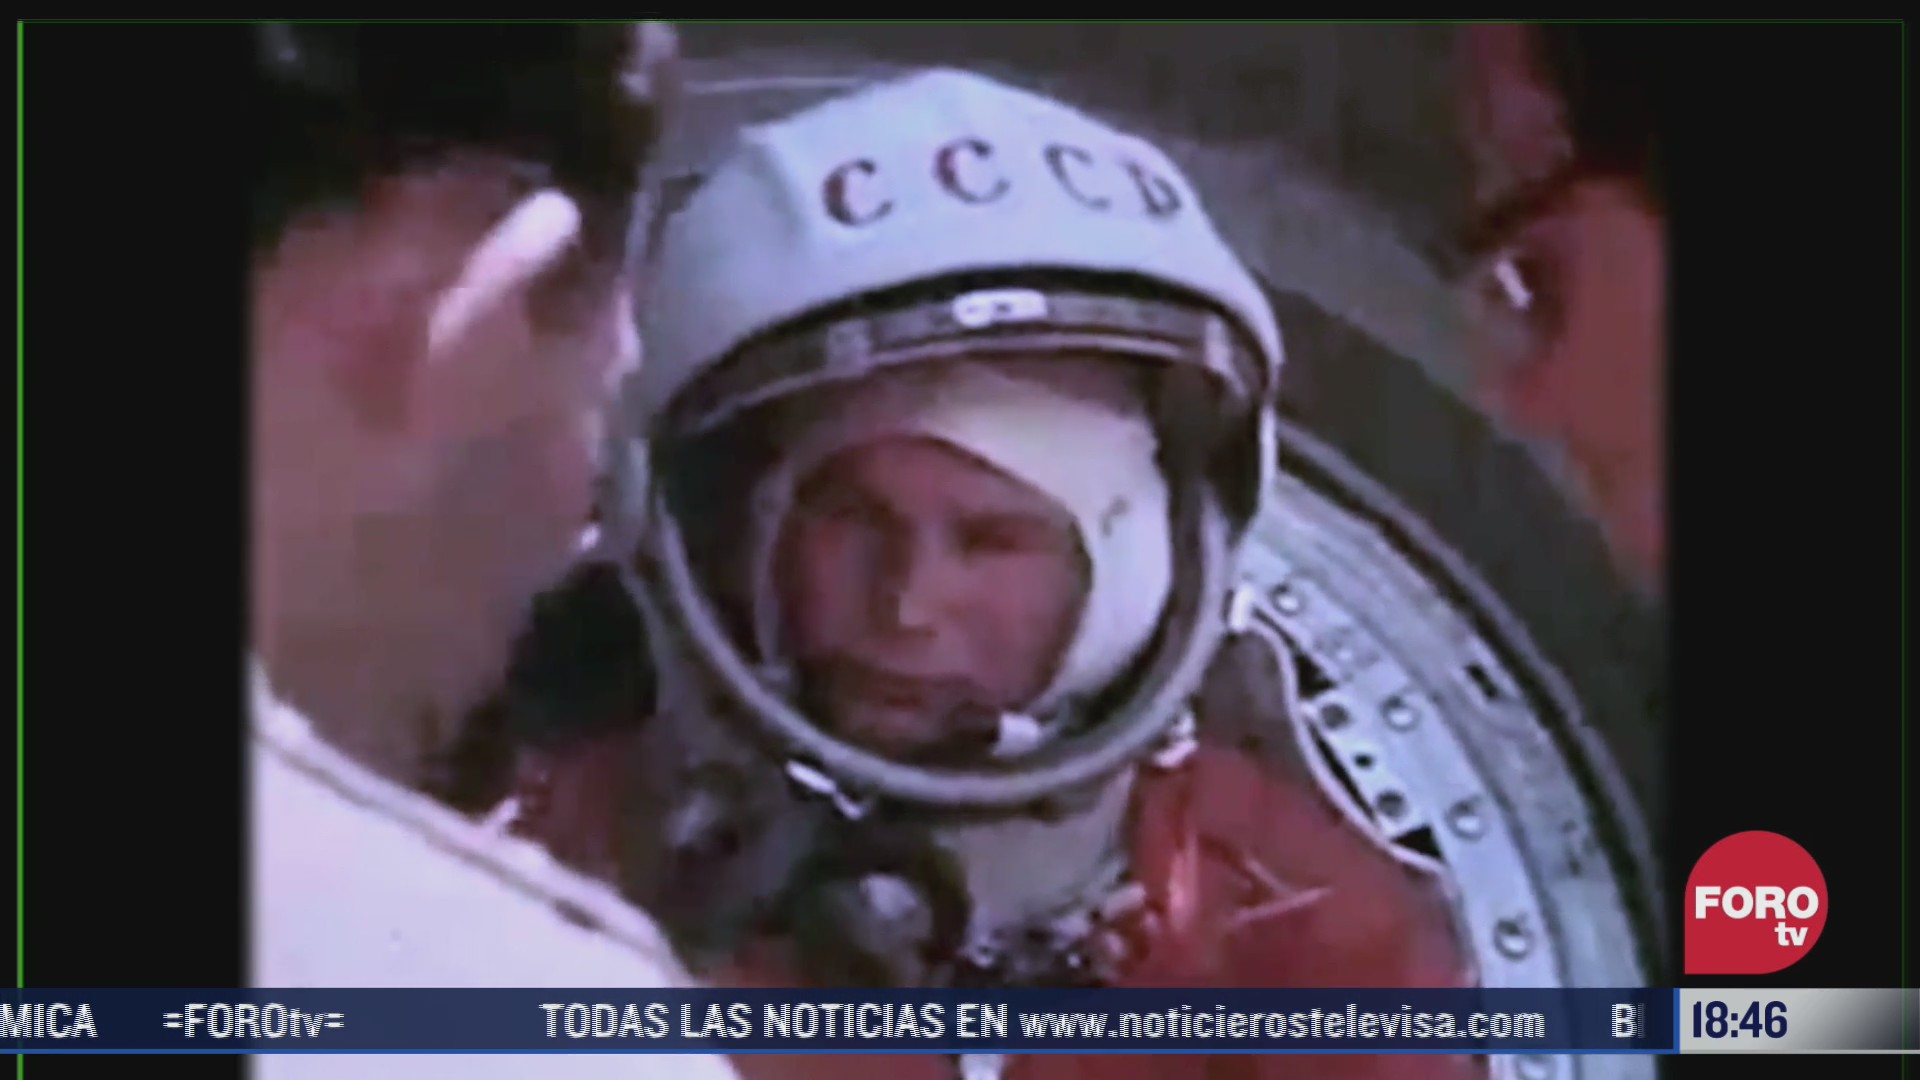 9 de marzo natalicio del primer cosmonauta de la historia